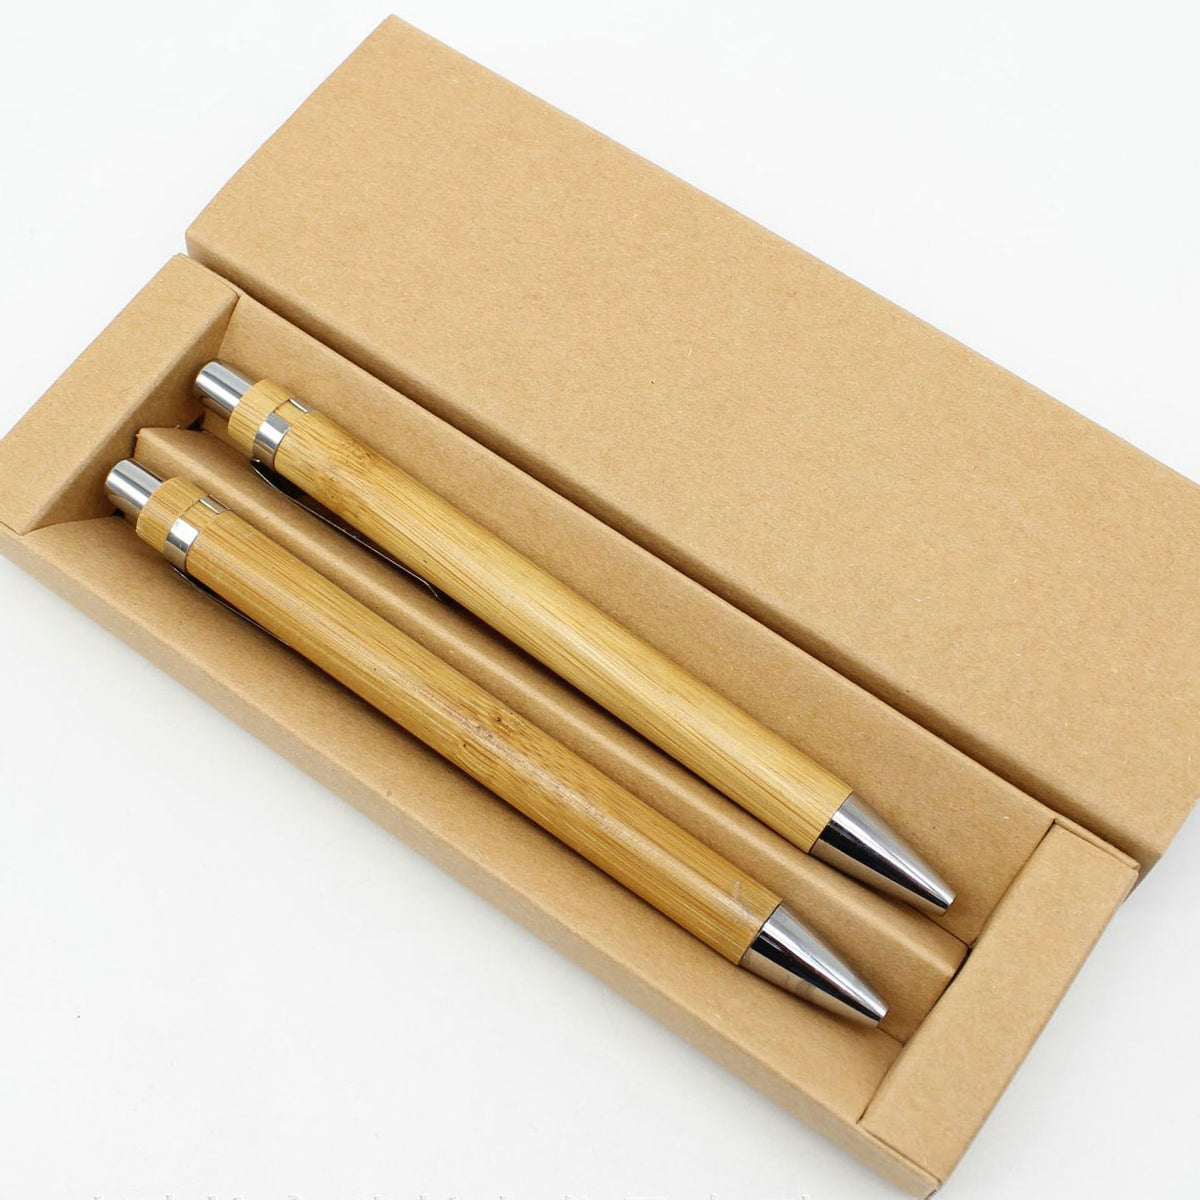 【客製化】竹木套裝兩件禮盒對筆組 | 禮品、贈品專業客製禮贈品顧問 | 禮品、贈品專屬客製禮贈品專家